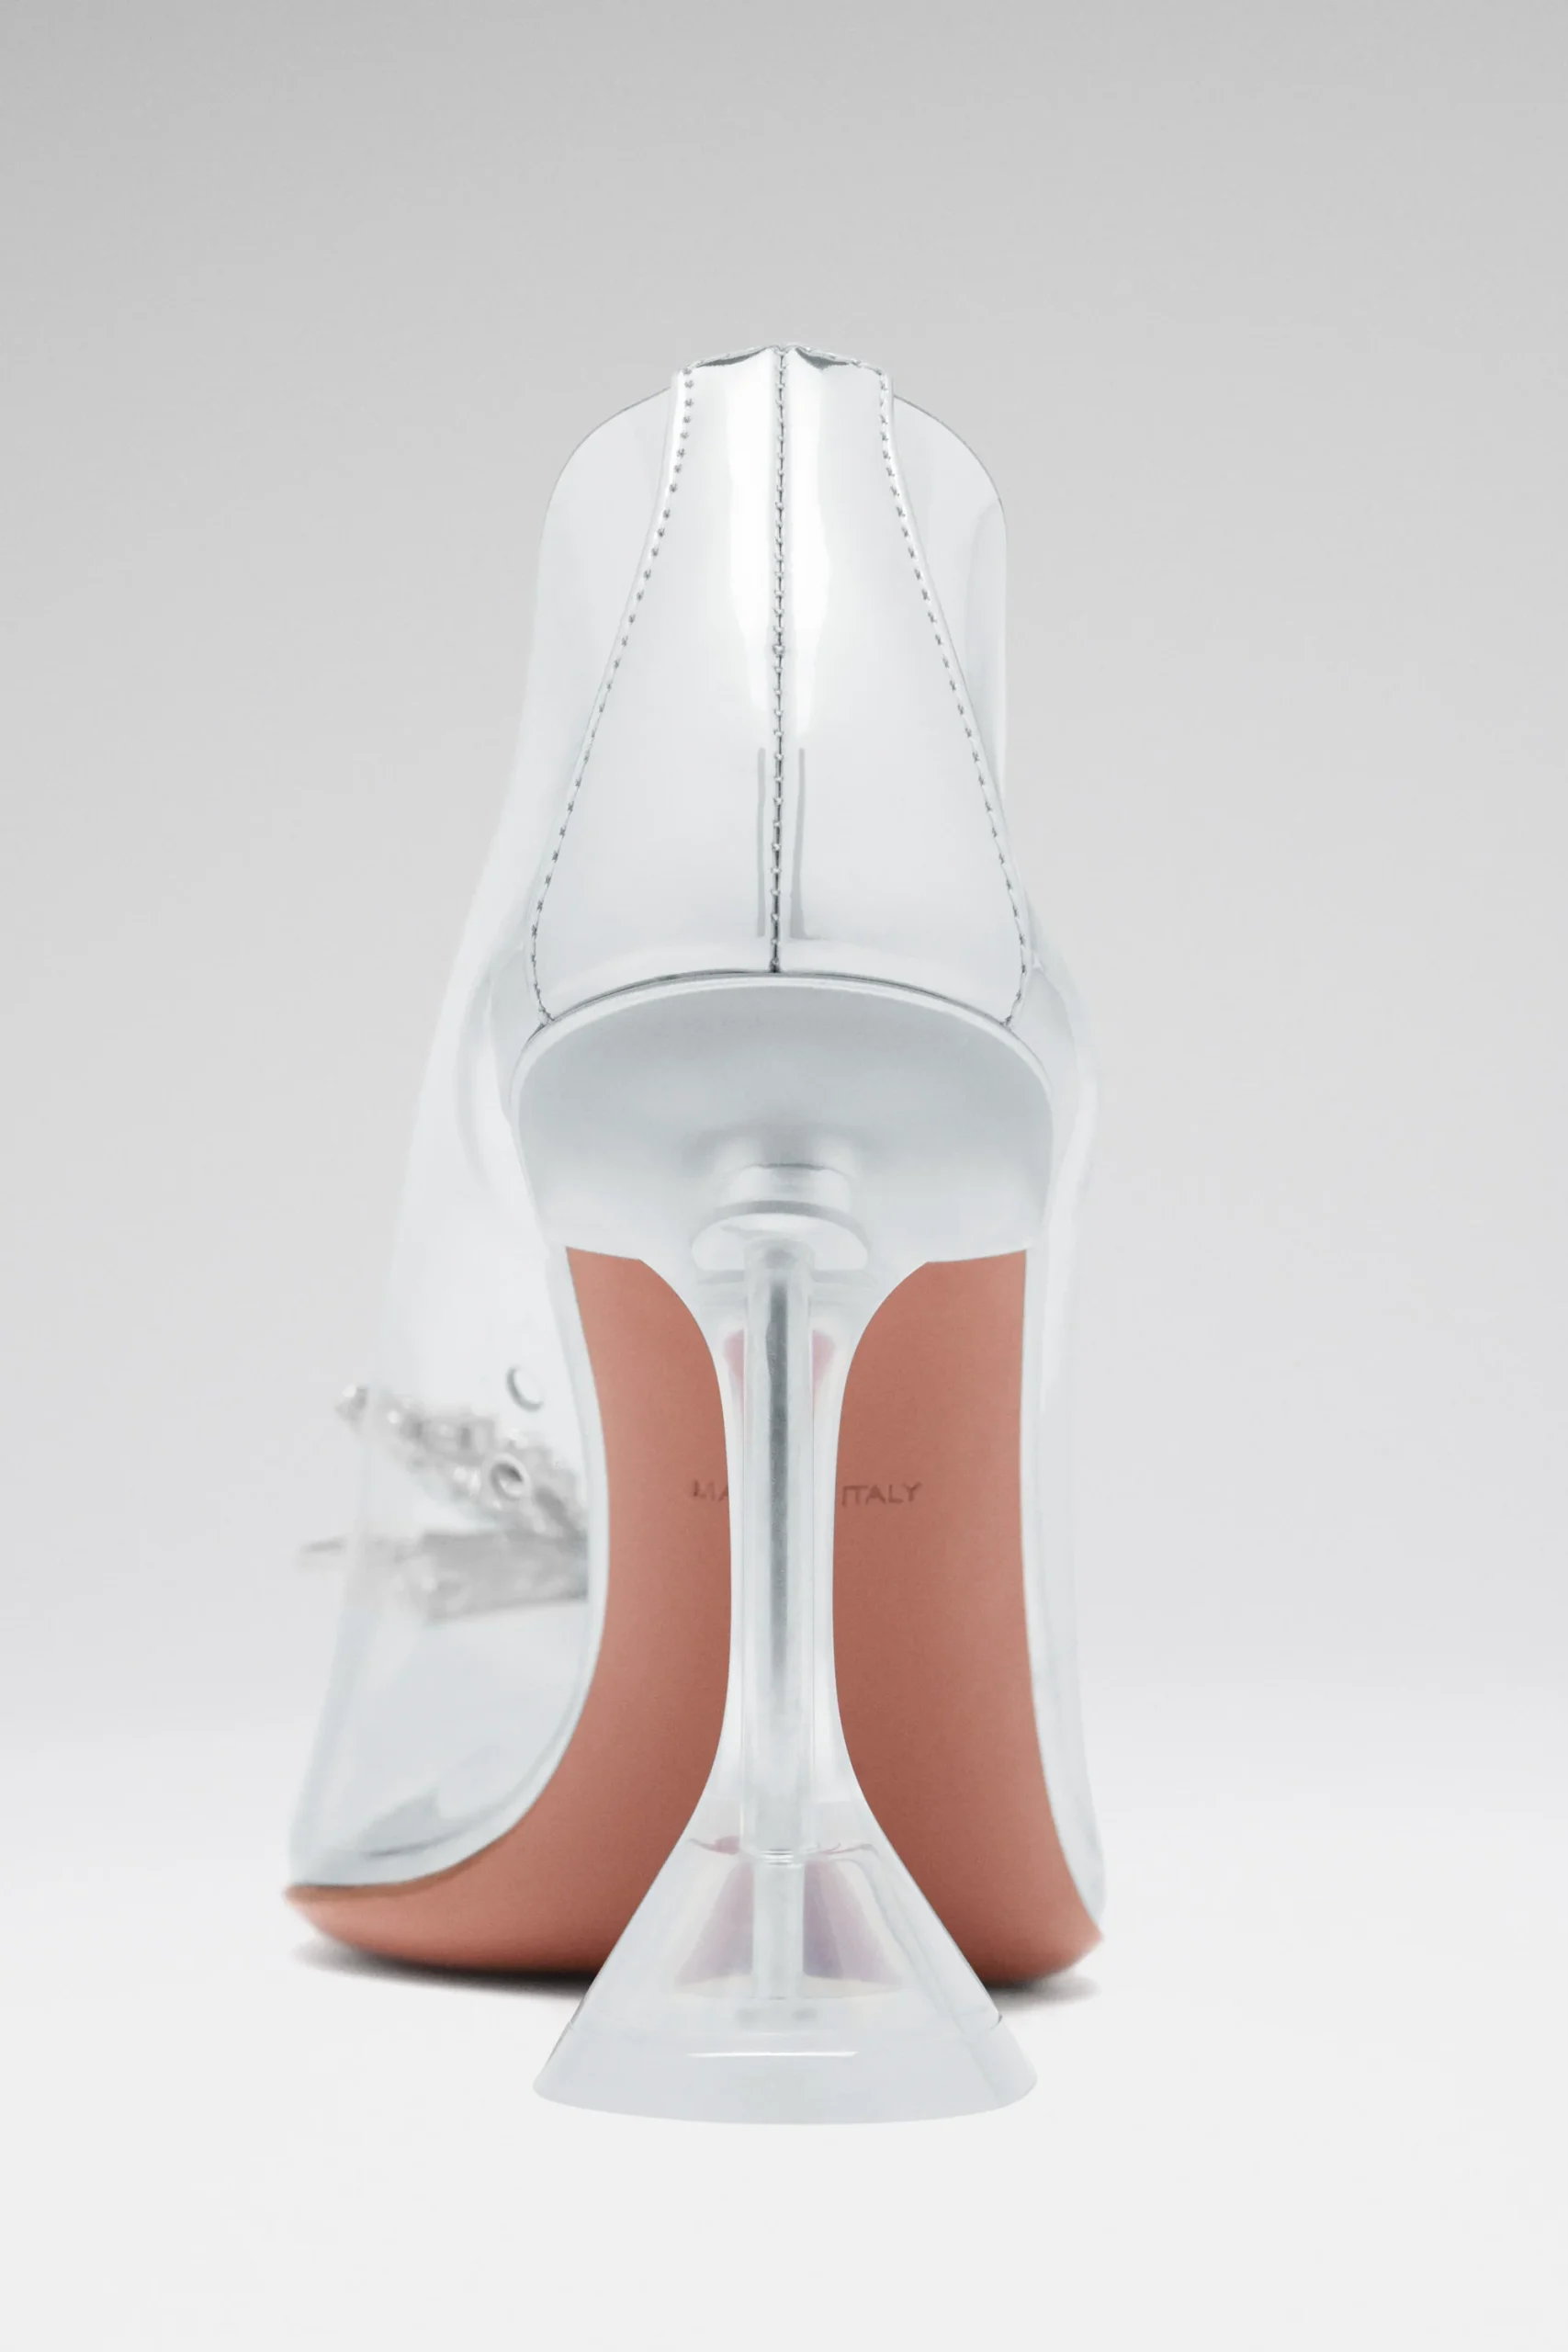 Vista trasera de los zapatos de novia Rosie Glass Pump de Amina Muaddi, destacando el tacón de 95 mm y el lazo de cristales